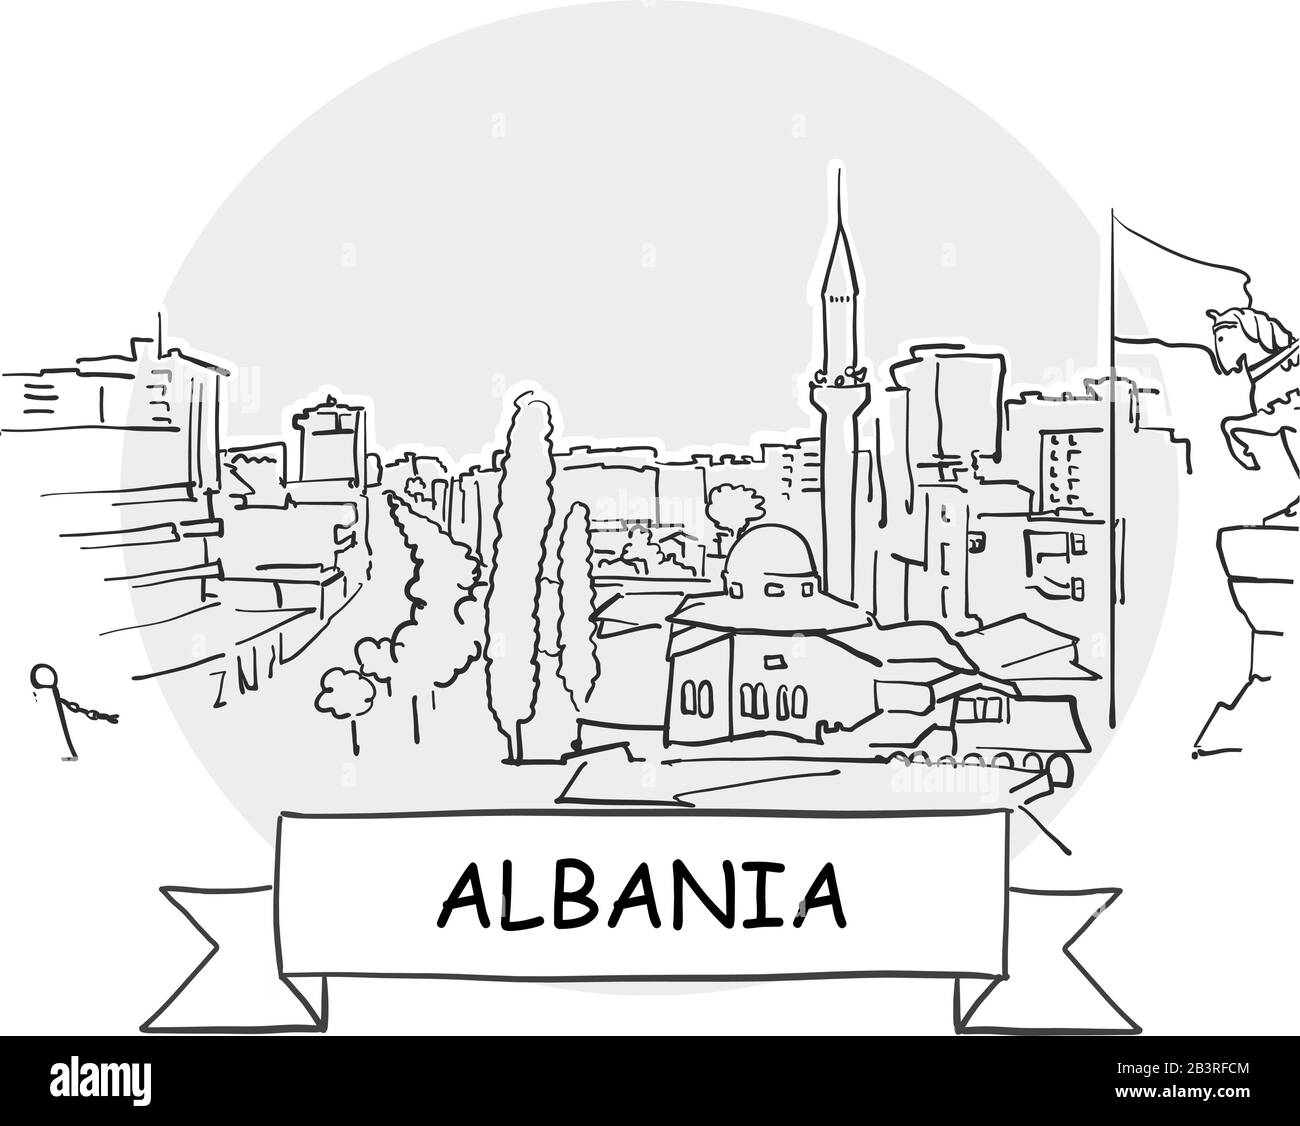 Albanie Signe Vectoriel Urbain Dessiné À La Main. Illustration De L'Art De La Ligne Noire Avec Ruban Et Titre. Illustration de Vecteur